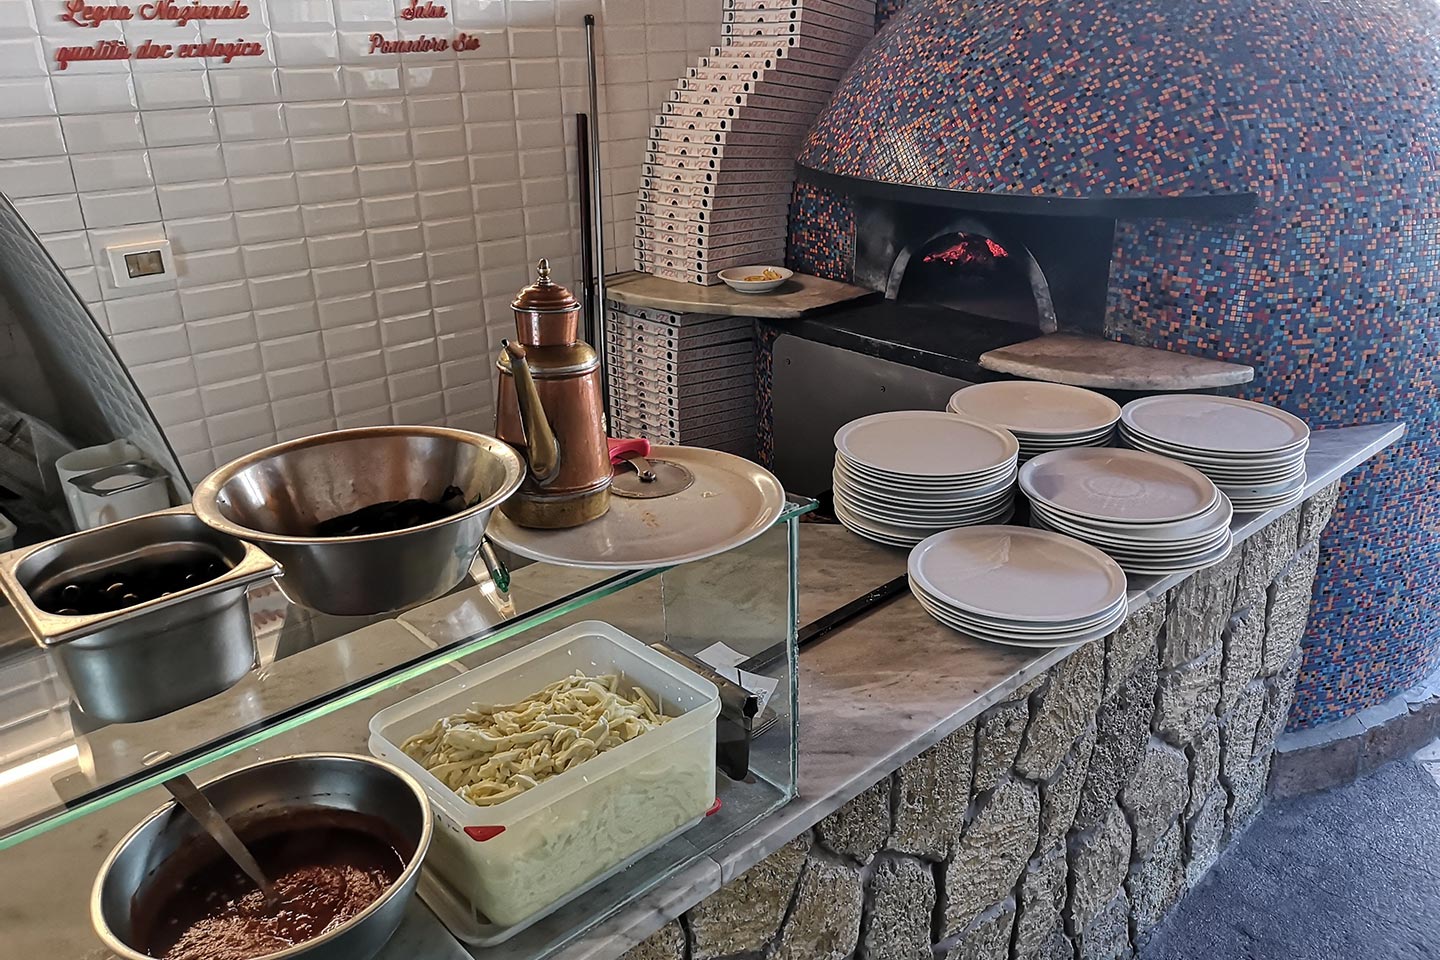 Pizza Holzofen auf Ischia